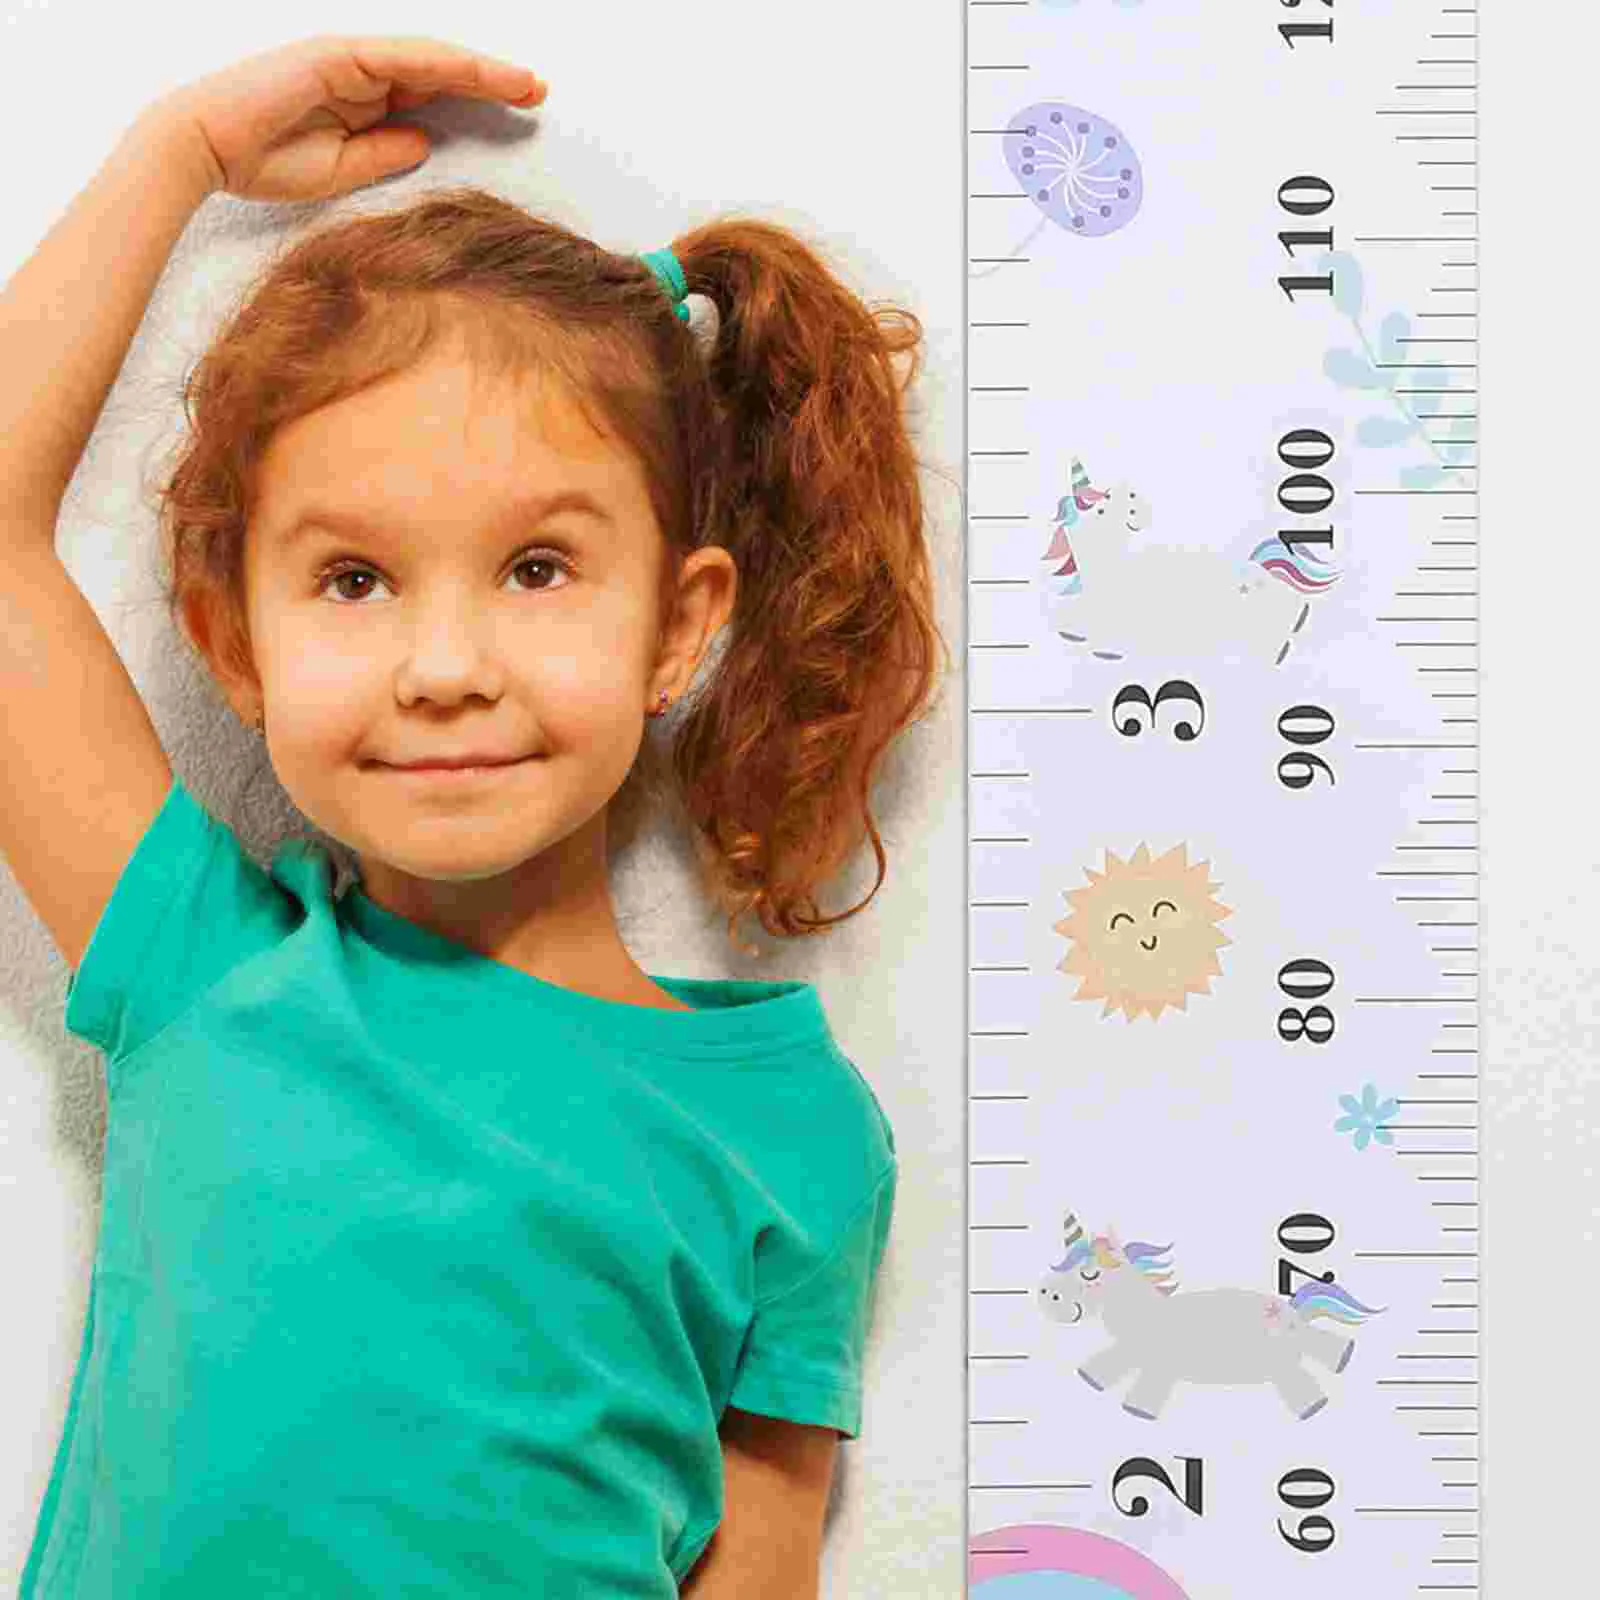 Child height. Измерение роста ребенка. Ребенок меряет рост. Девочка измеряет рост. Замедление роста у детей.